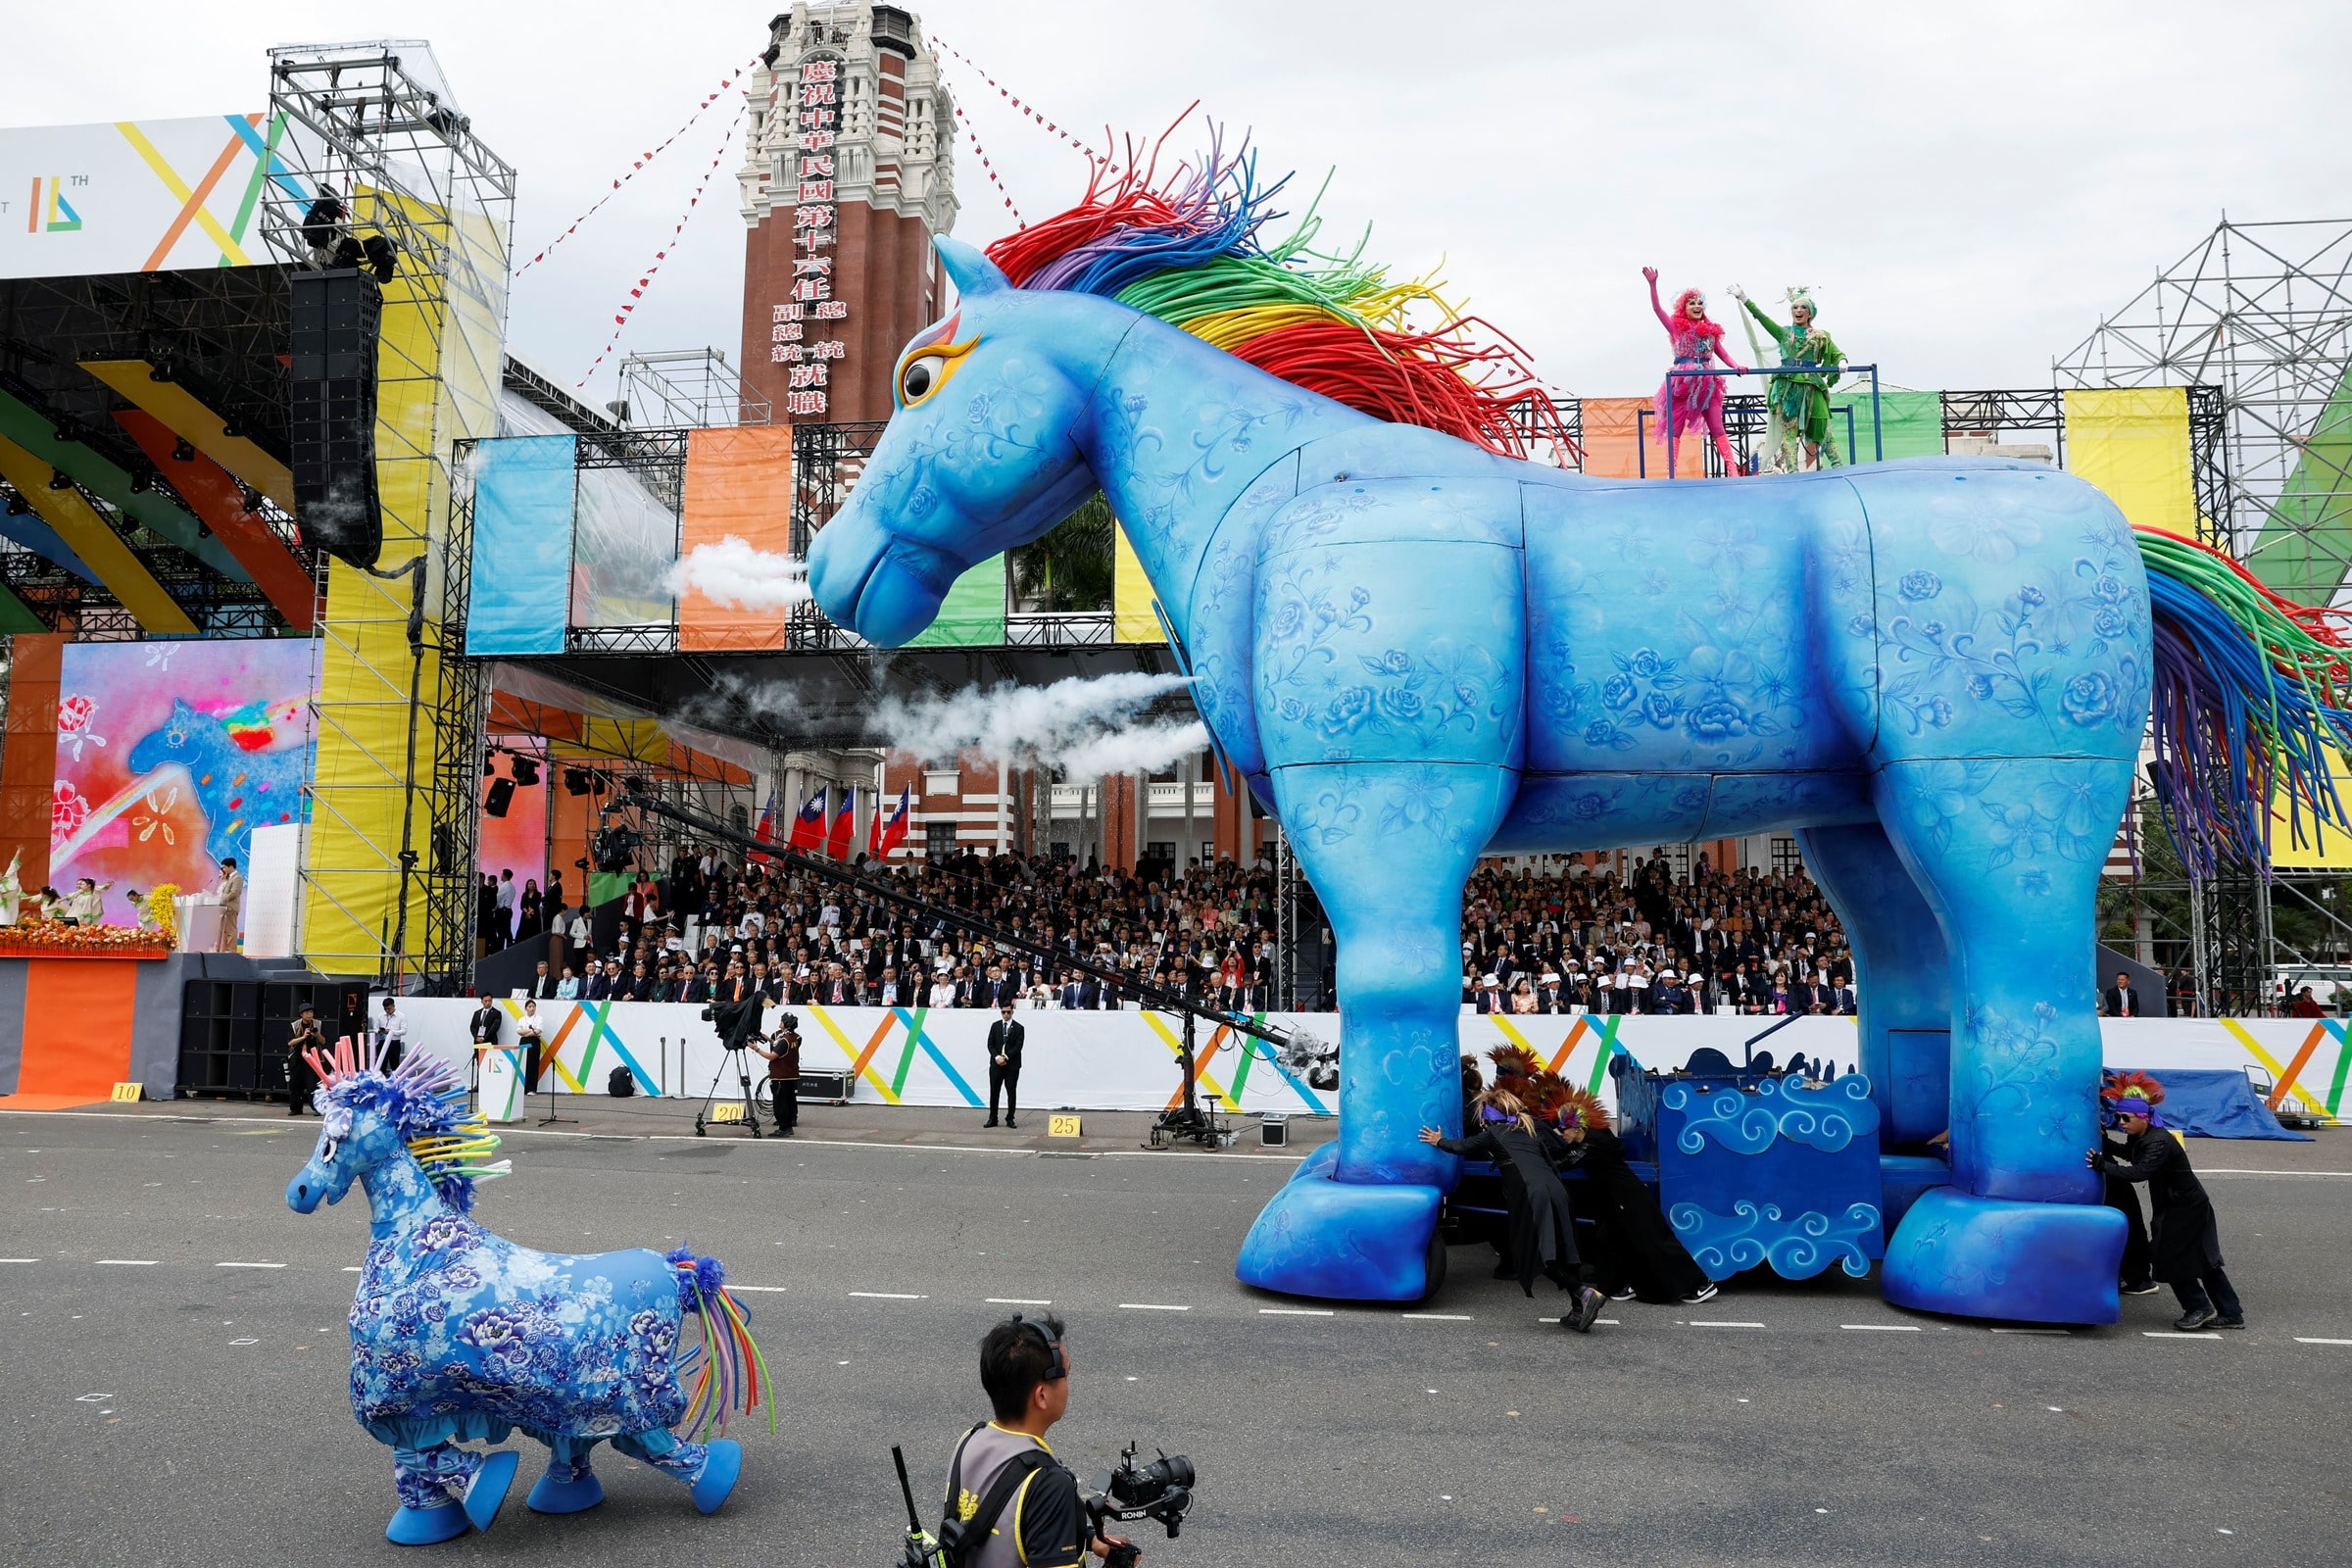 【图集】台湾总统就职巨型“雨马”助阵   披彩虹鬃毛象征族群和解